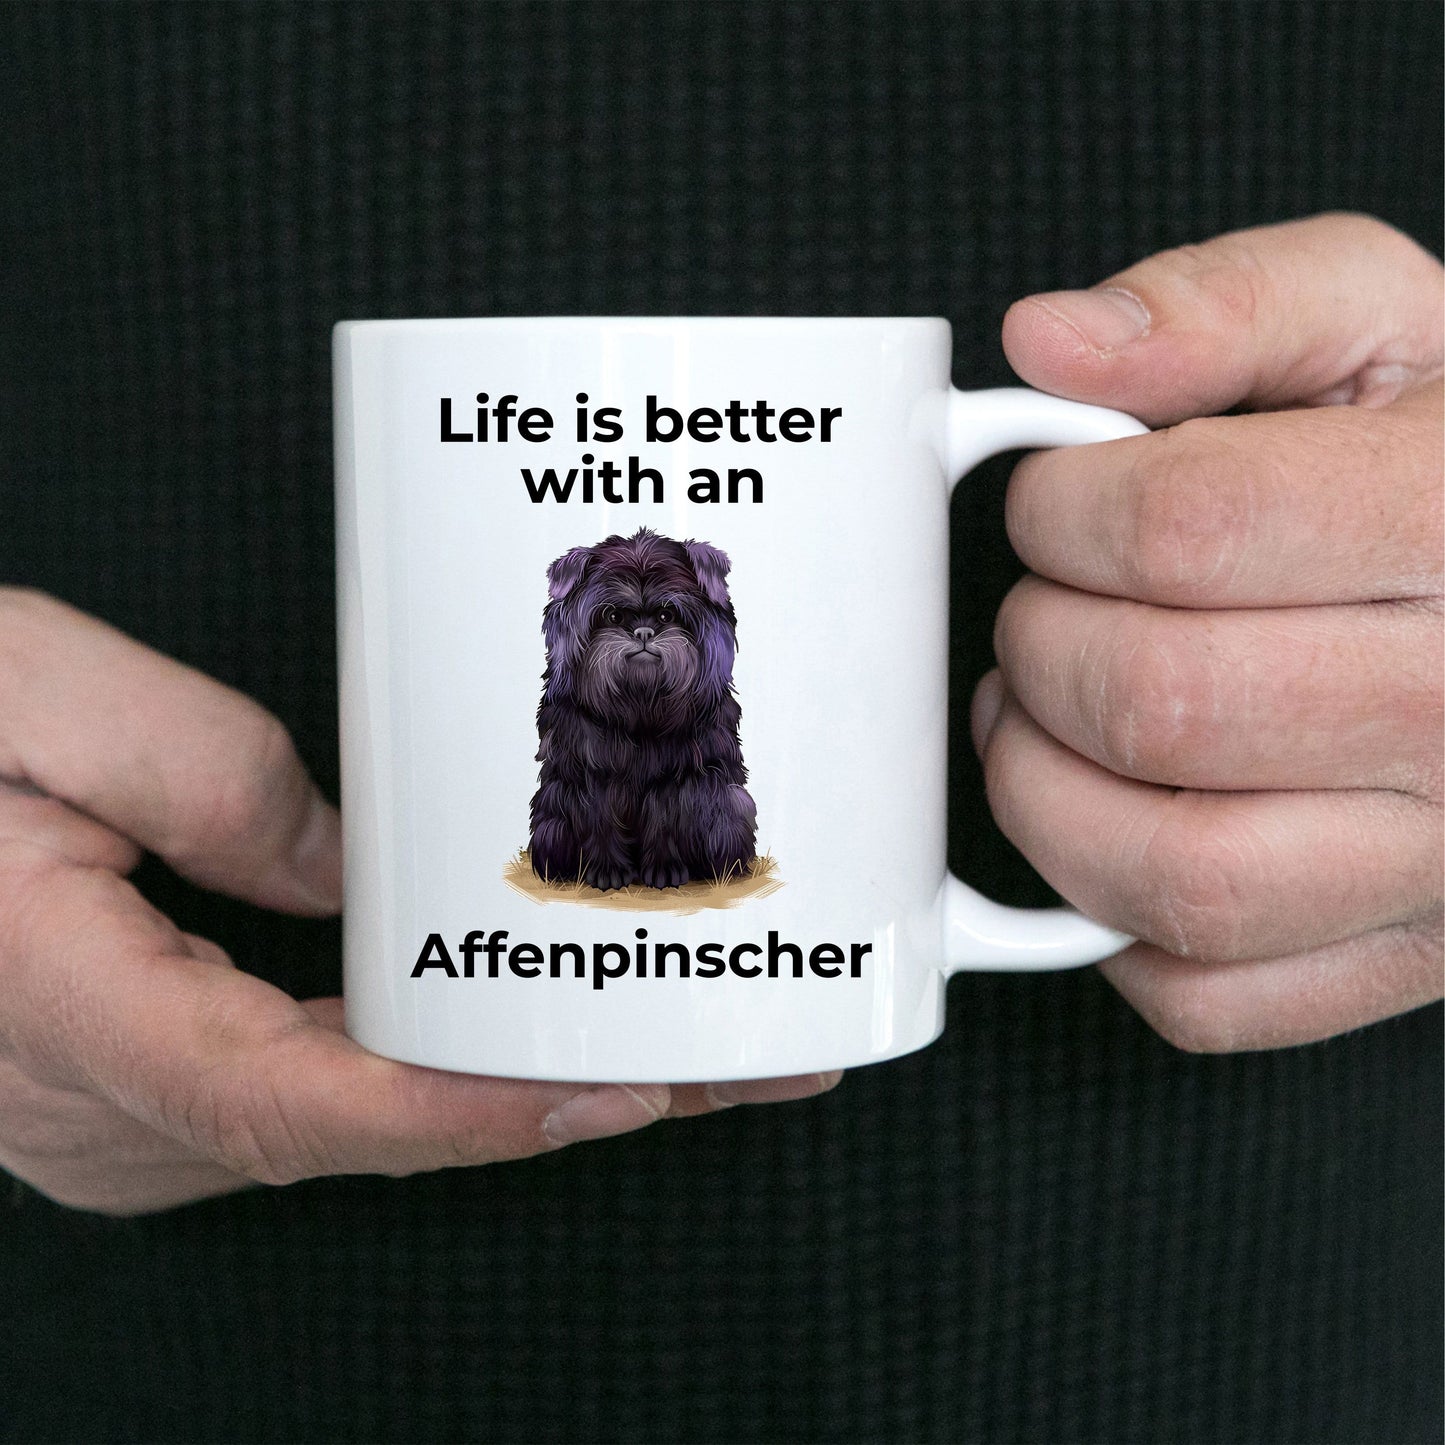 Affenpinscher Dog Coffee Mug - Life is better with an Affenpinscher